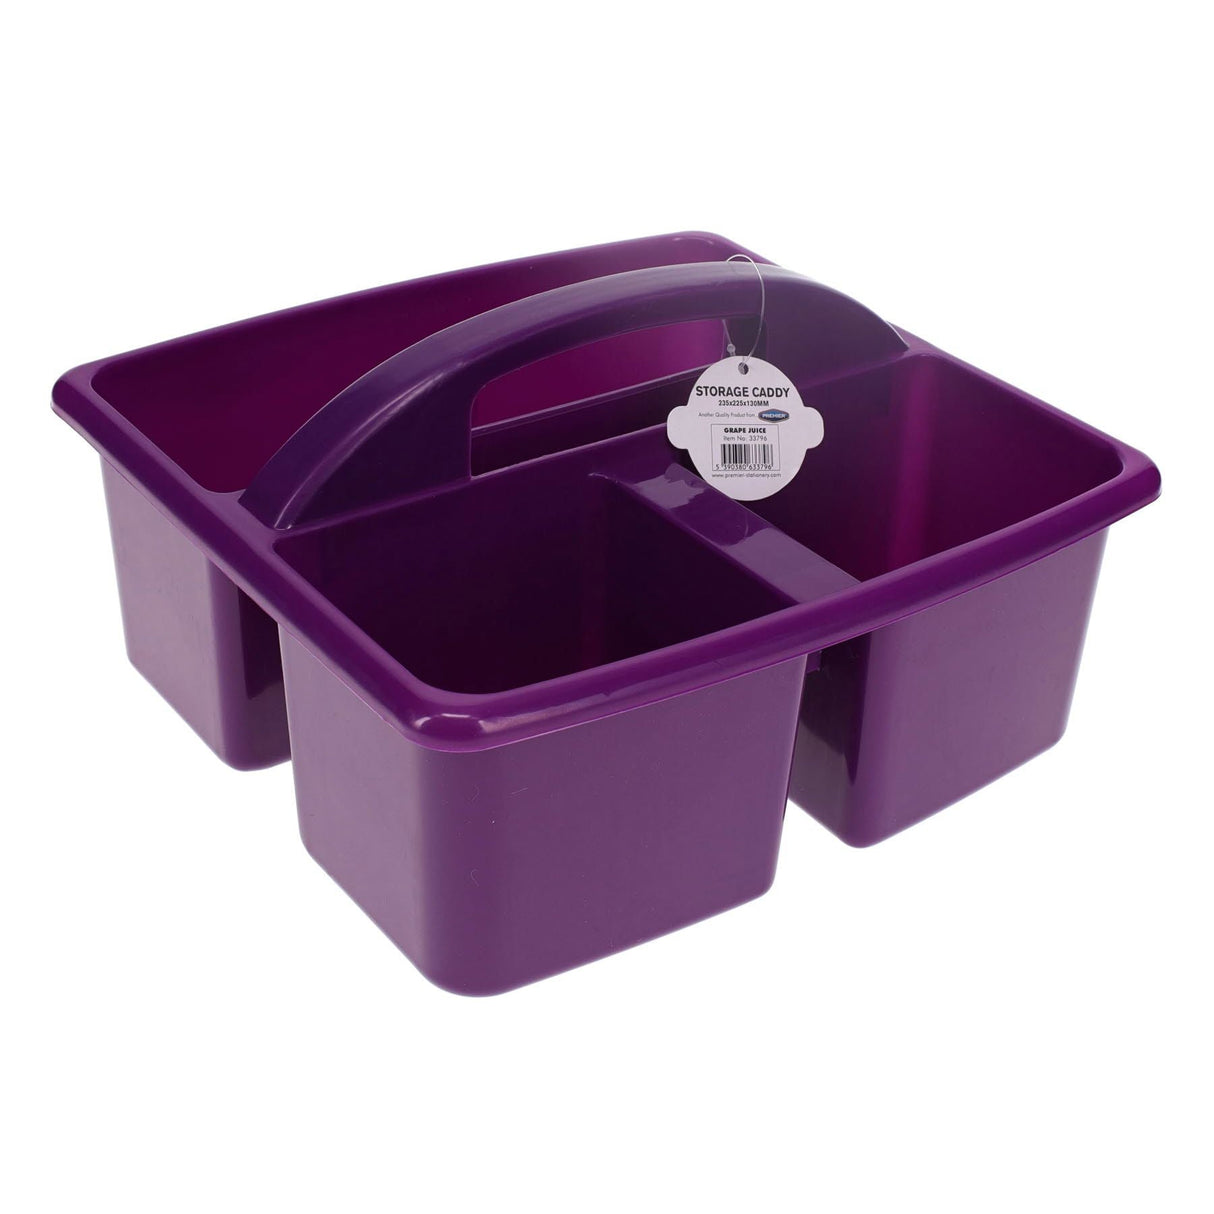 Premto Storage Caddy - 235x225x130mm - Grape Juice Purple-Storage Caddies-Premto|StationeryShop.co.uk